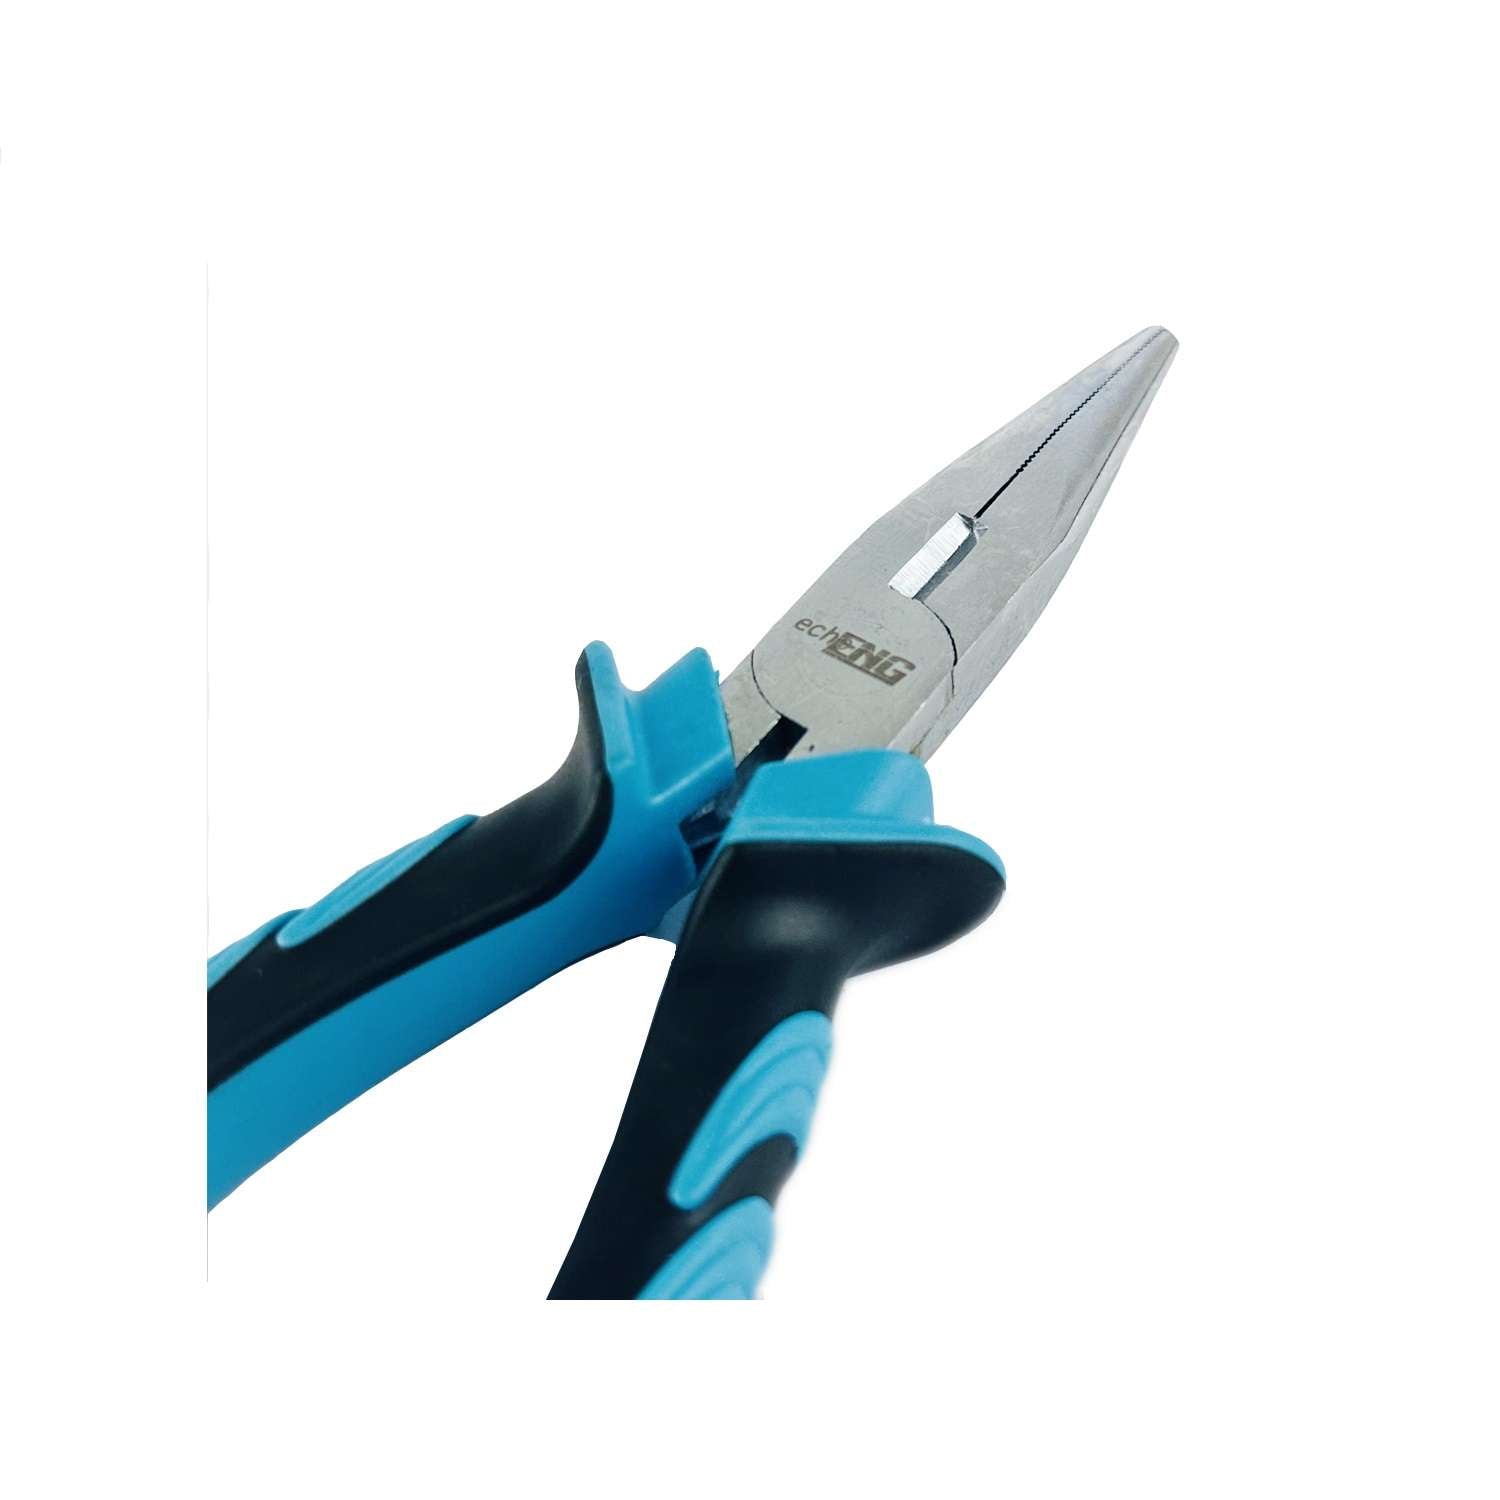 Snipe nose plier anti-slip ergonomic handle - UM 30 PB(15-17)